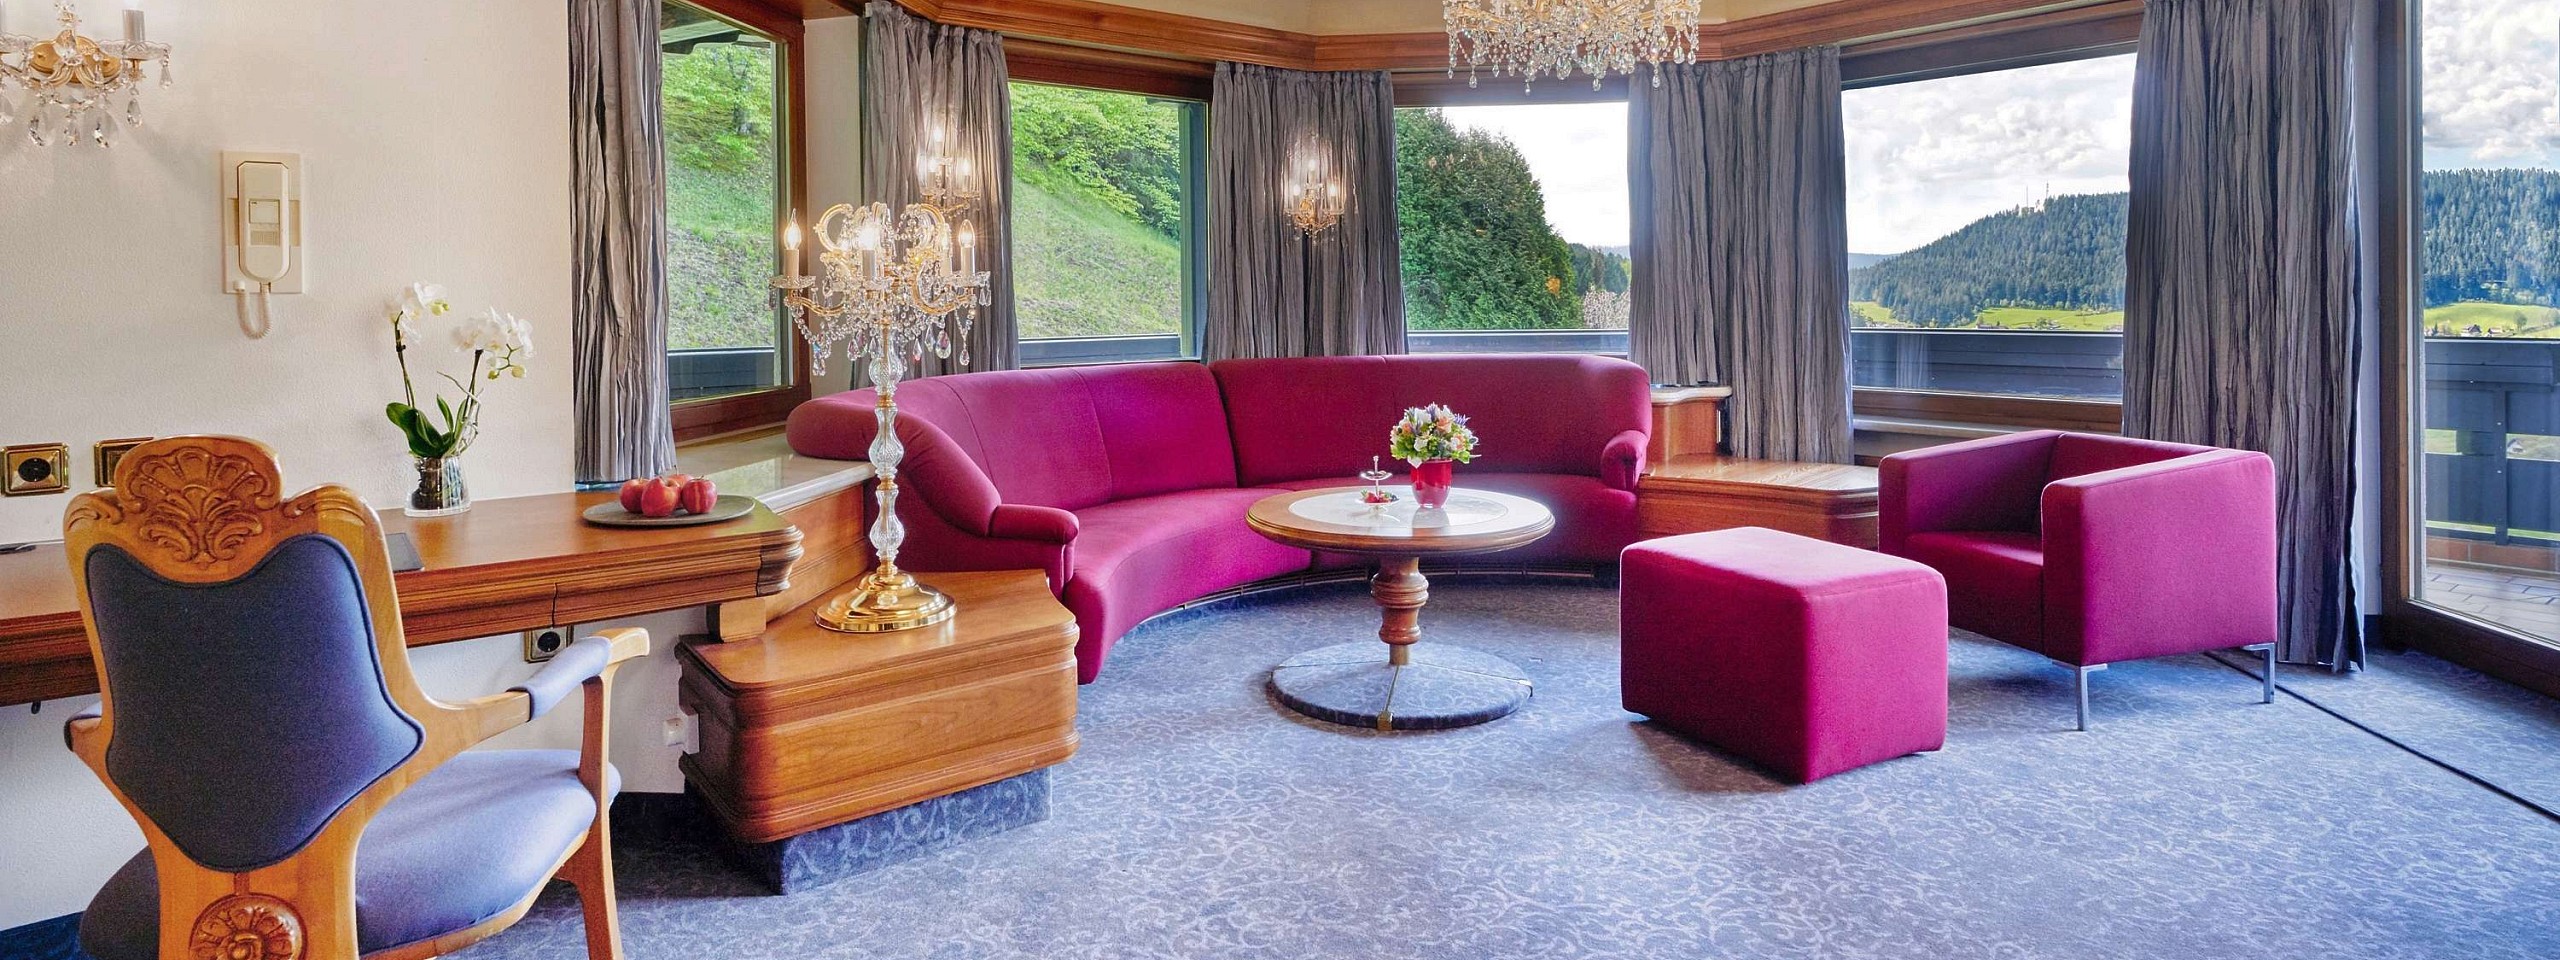 Prachtvoller Sitzbereich der Suite Dompfaff, eines der Hotelzimmer im Schwarzwald.